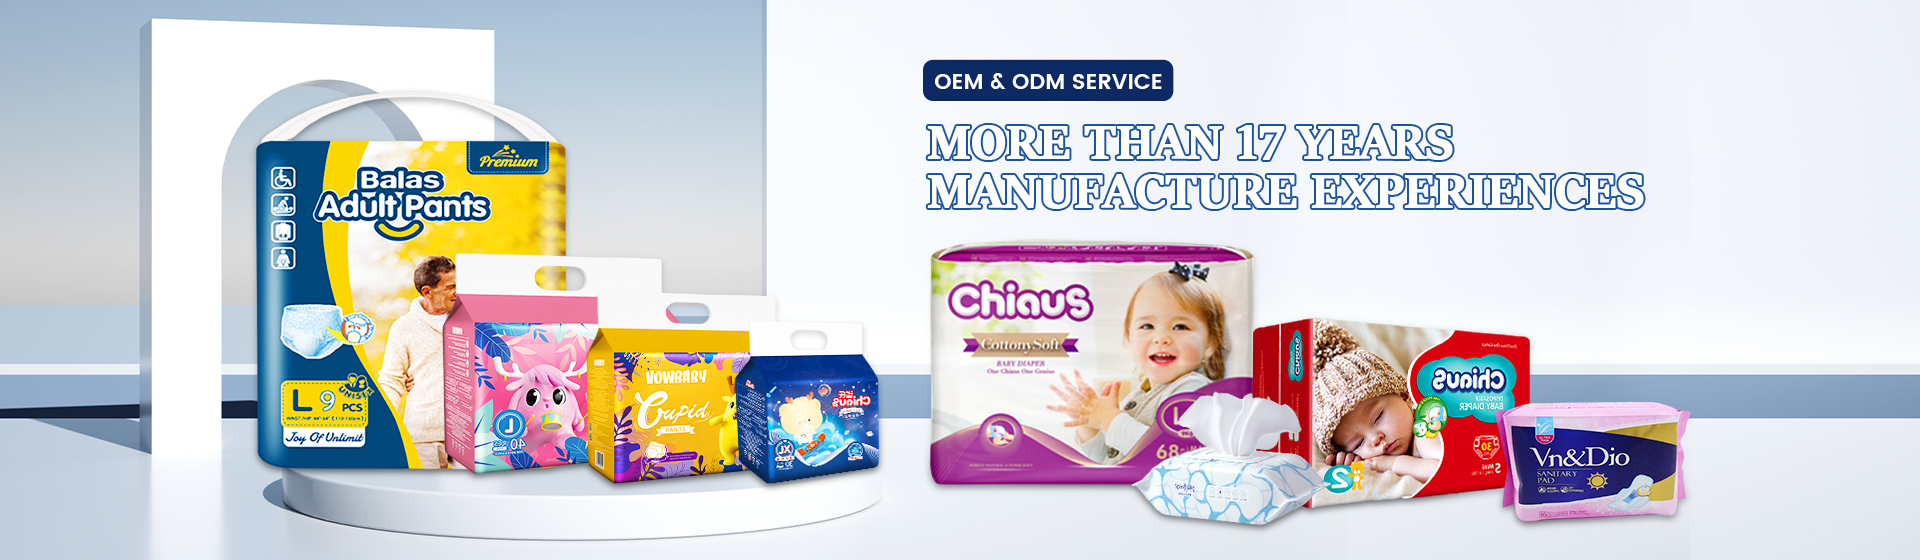 Chiaus tillverkar blöjor distributörer ville ha OEM-tjänster tillgängliga utomlands